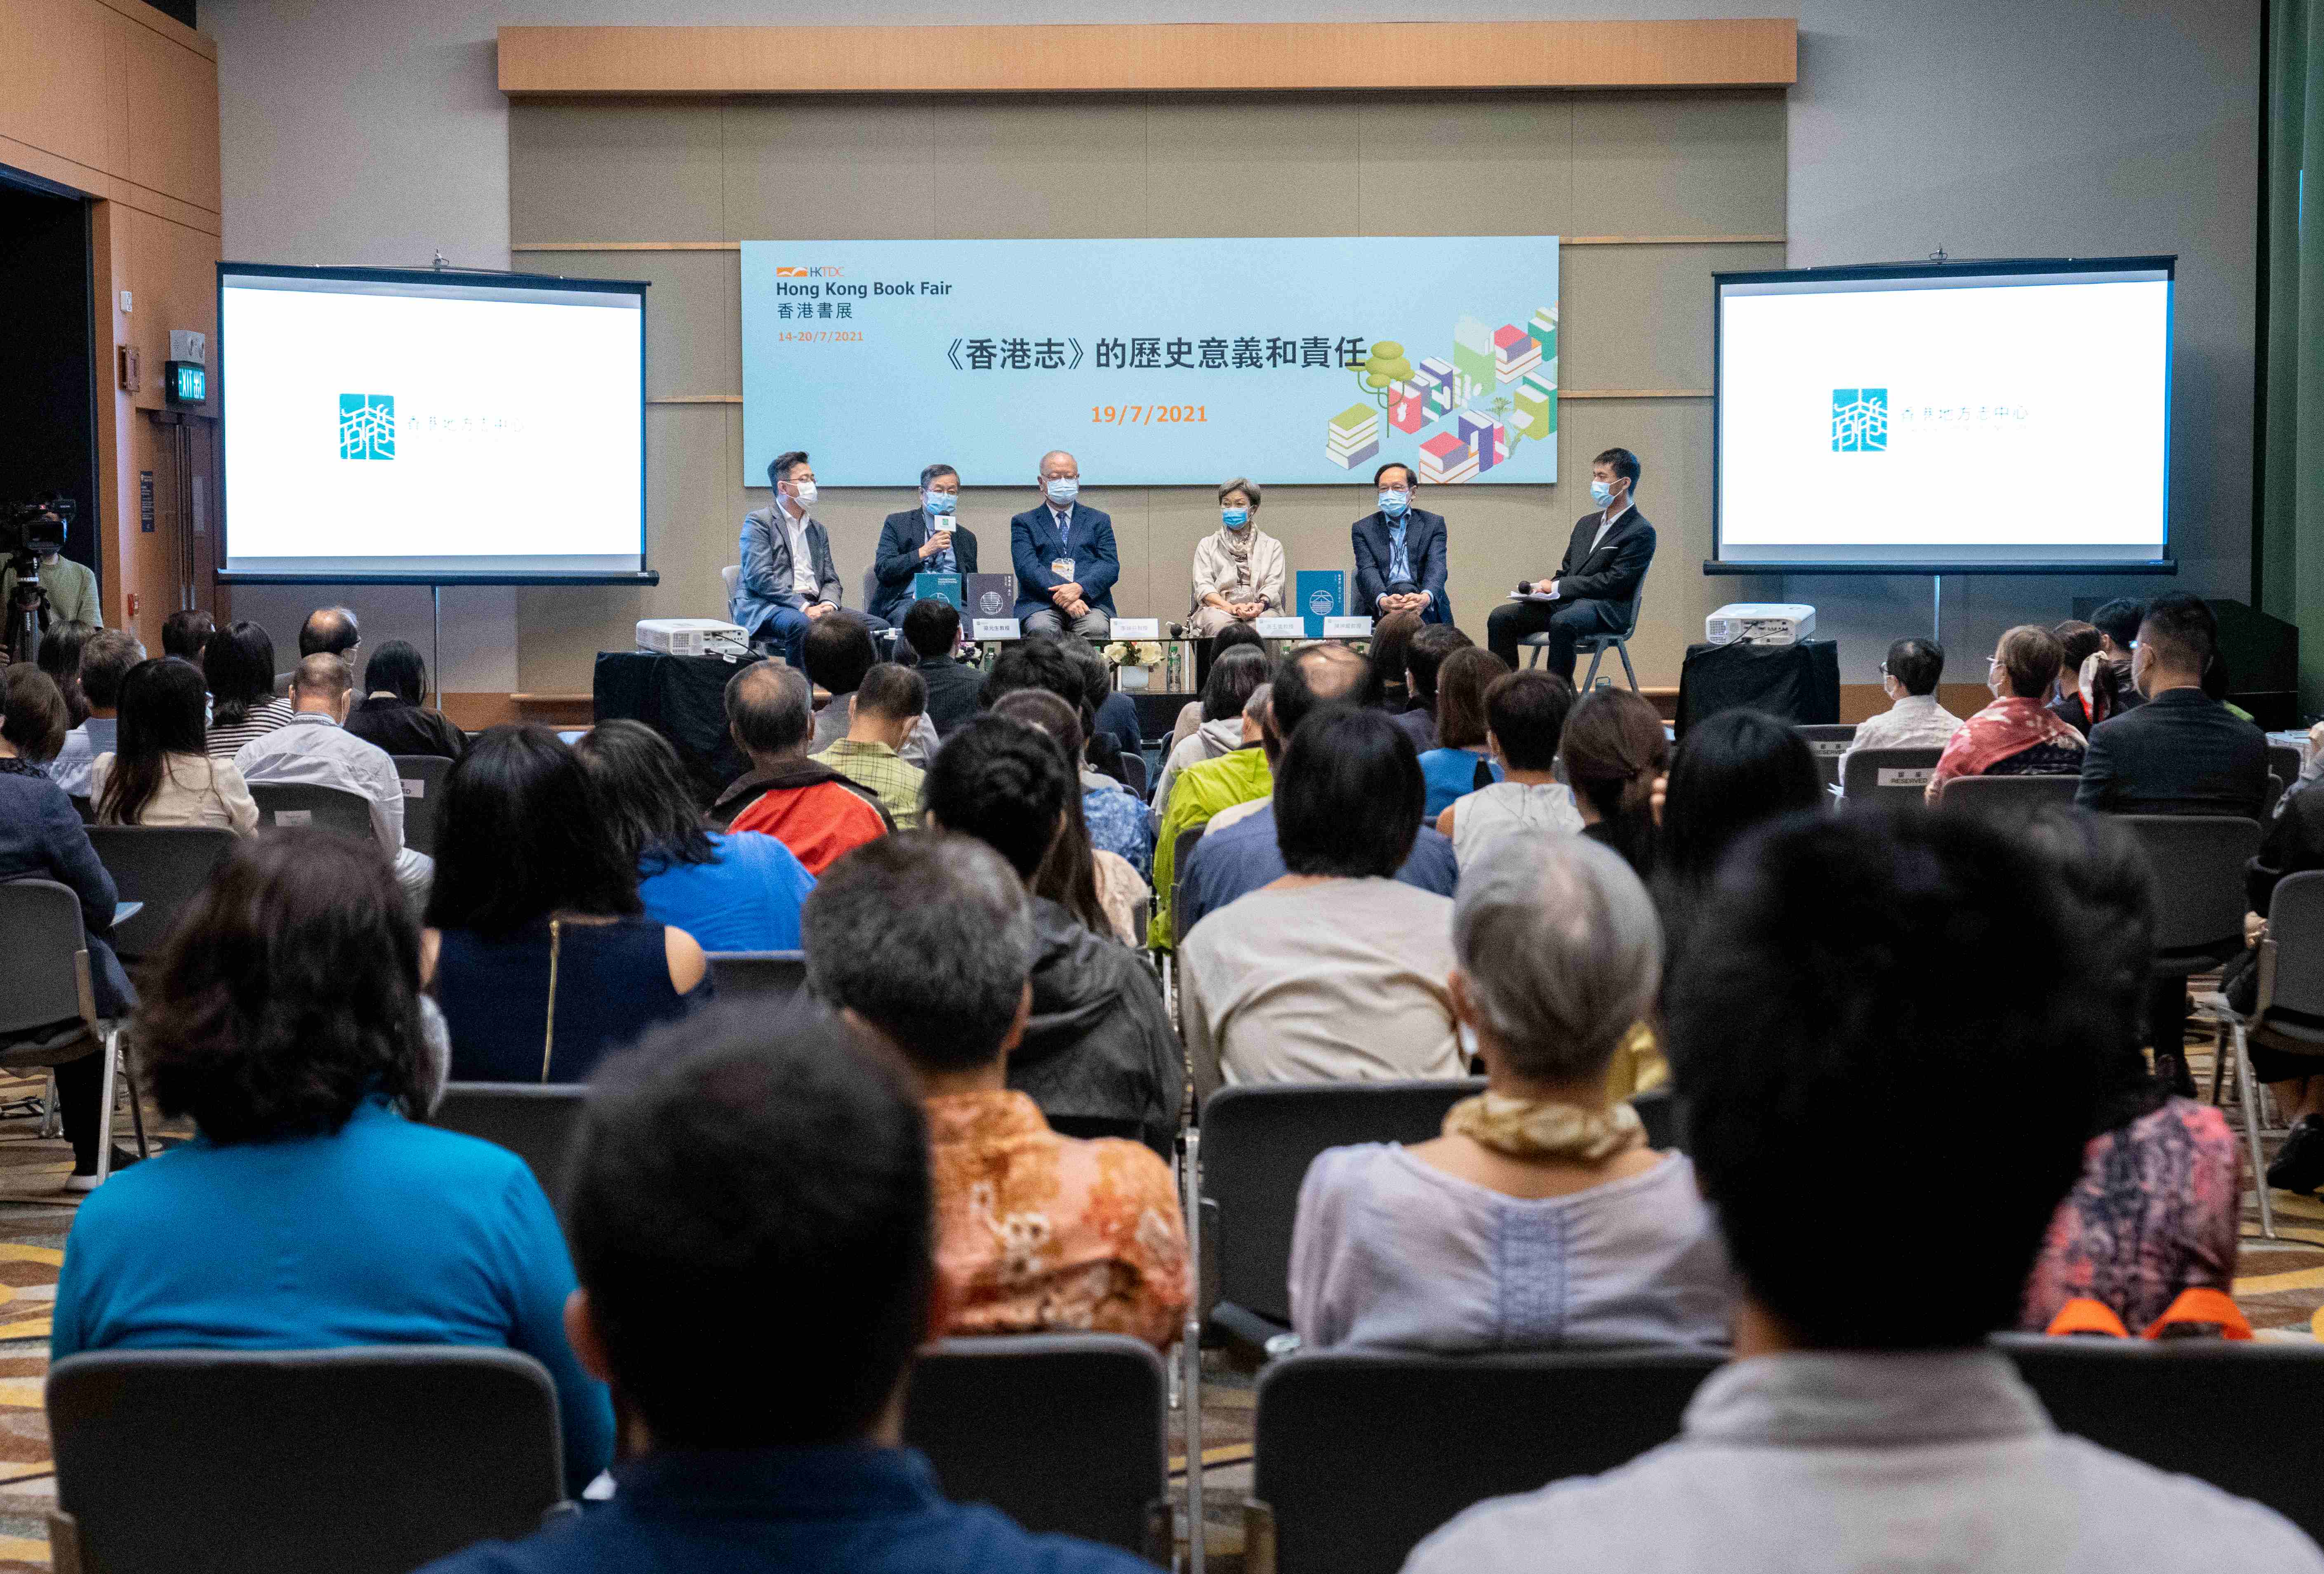 「《香港志》的歷史意義和責任」講座吸引150多名公眾及媒體參與。